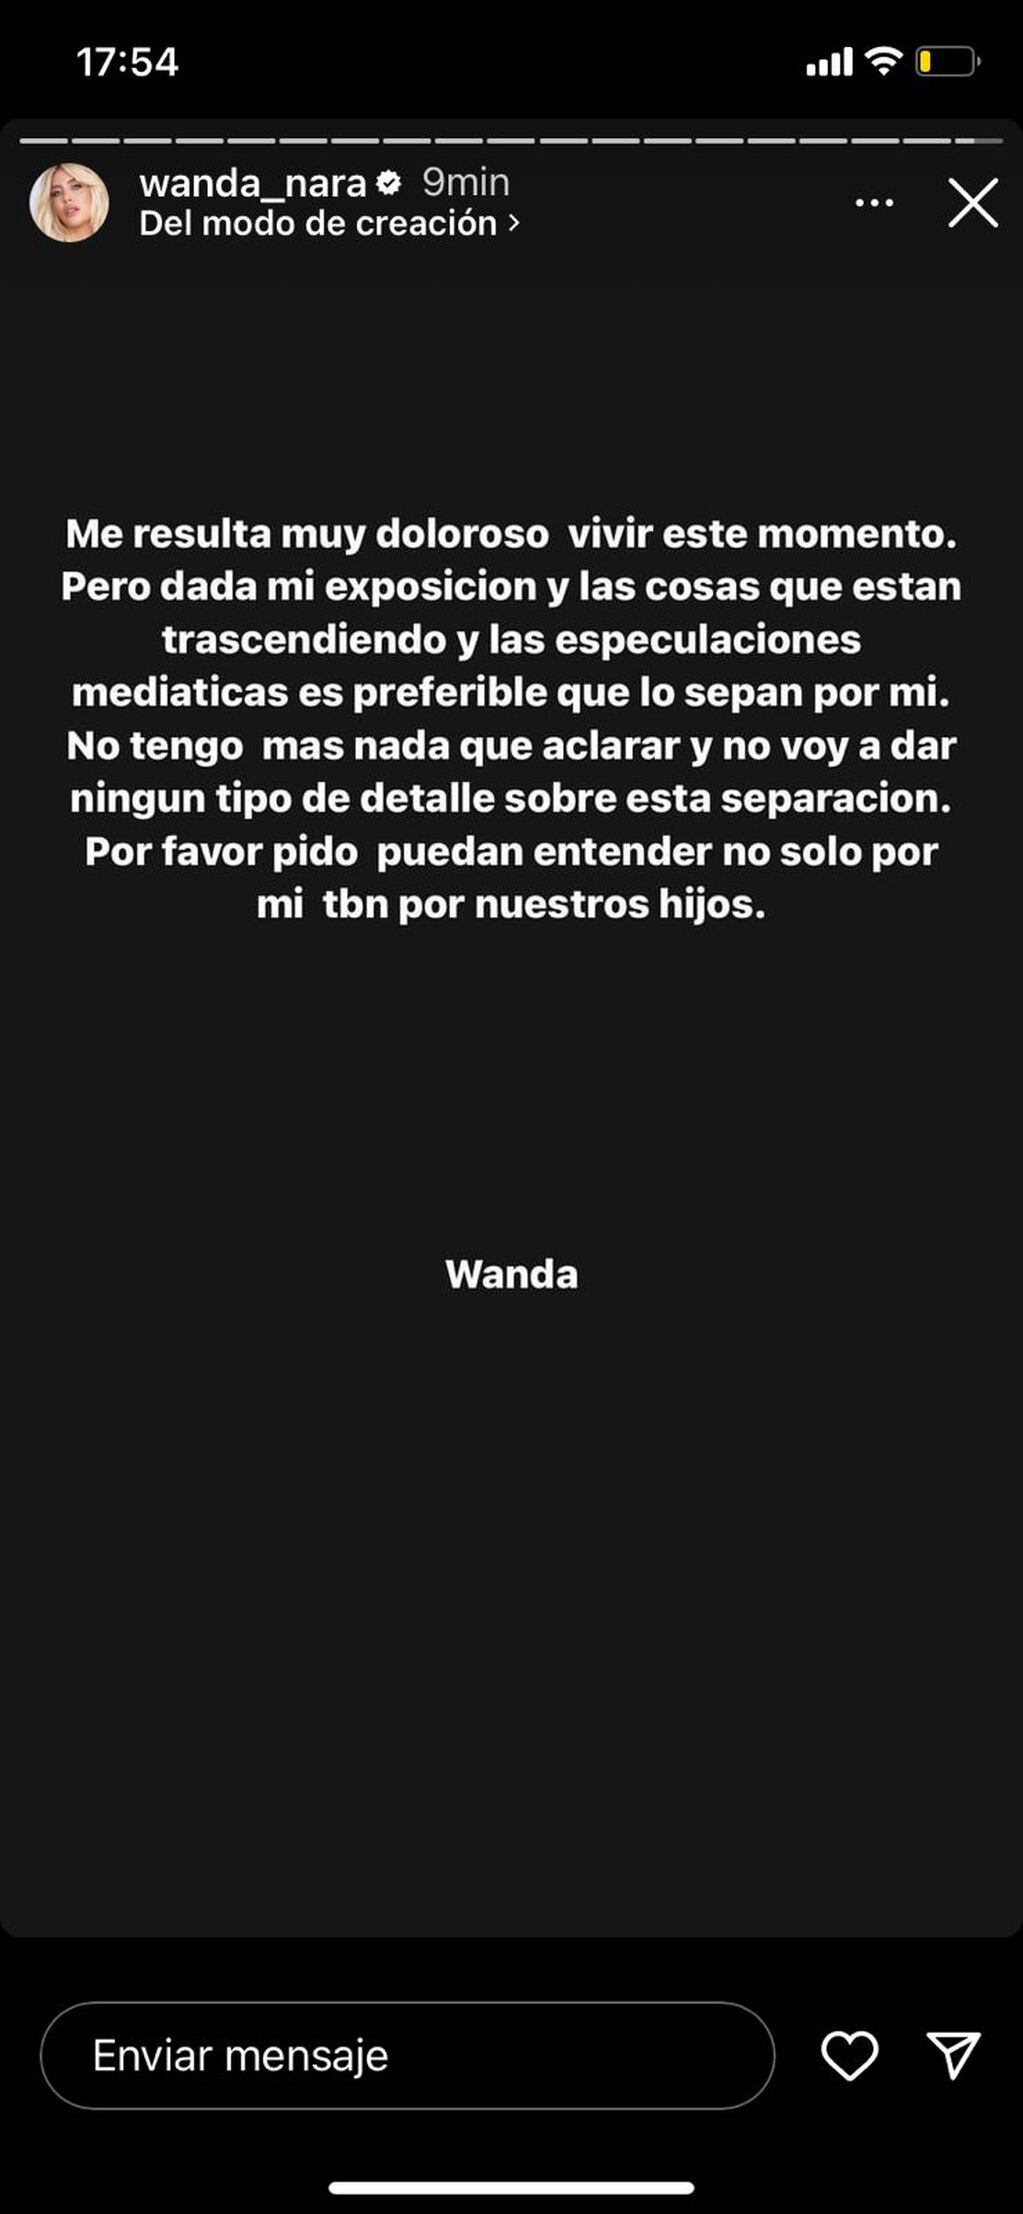 Wanda Nara confirmó la separación de Mauro Icardi.